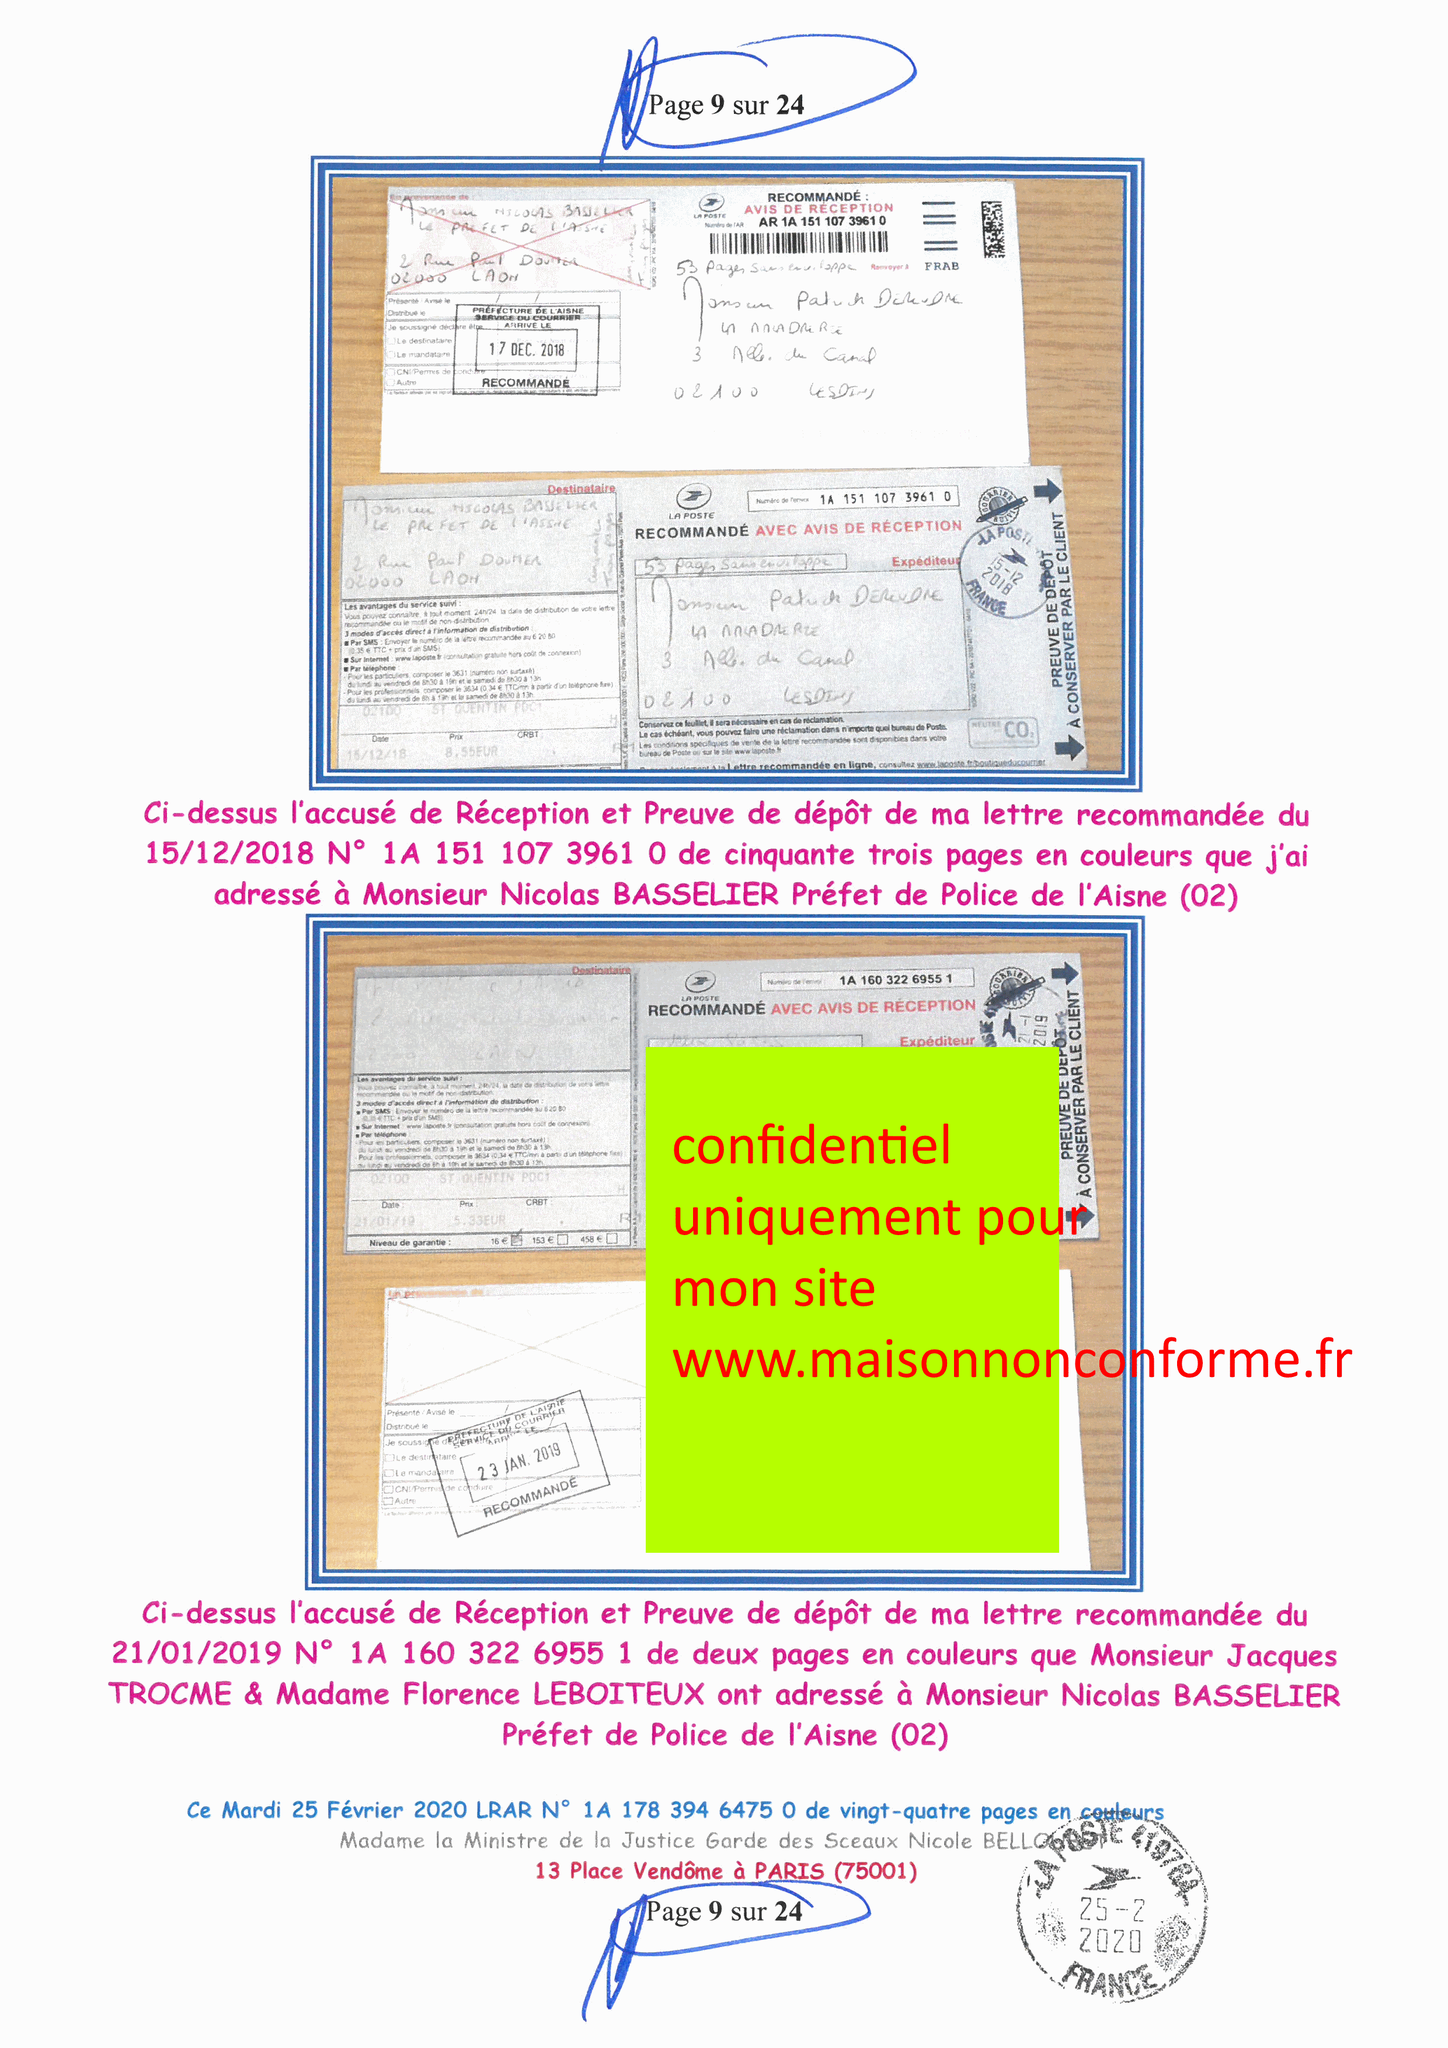 Ma LRAR à Madame Nicole BELLOUBET la Ministre de la Justice N0 1A 178 394 6475 0 Page 9 sur 24 en couleur  www.jesuispatrick.com www.jesuisvictime.fr www.alerte-rouge-france.fr